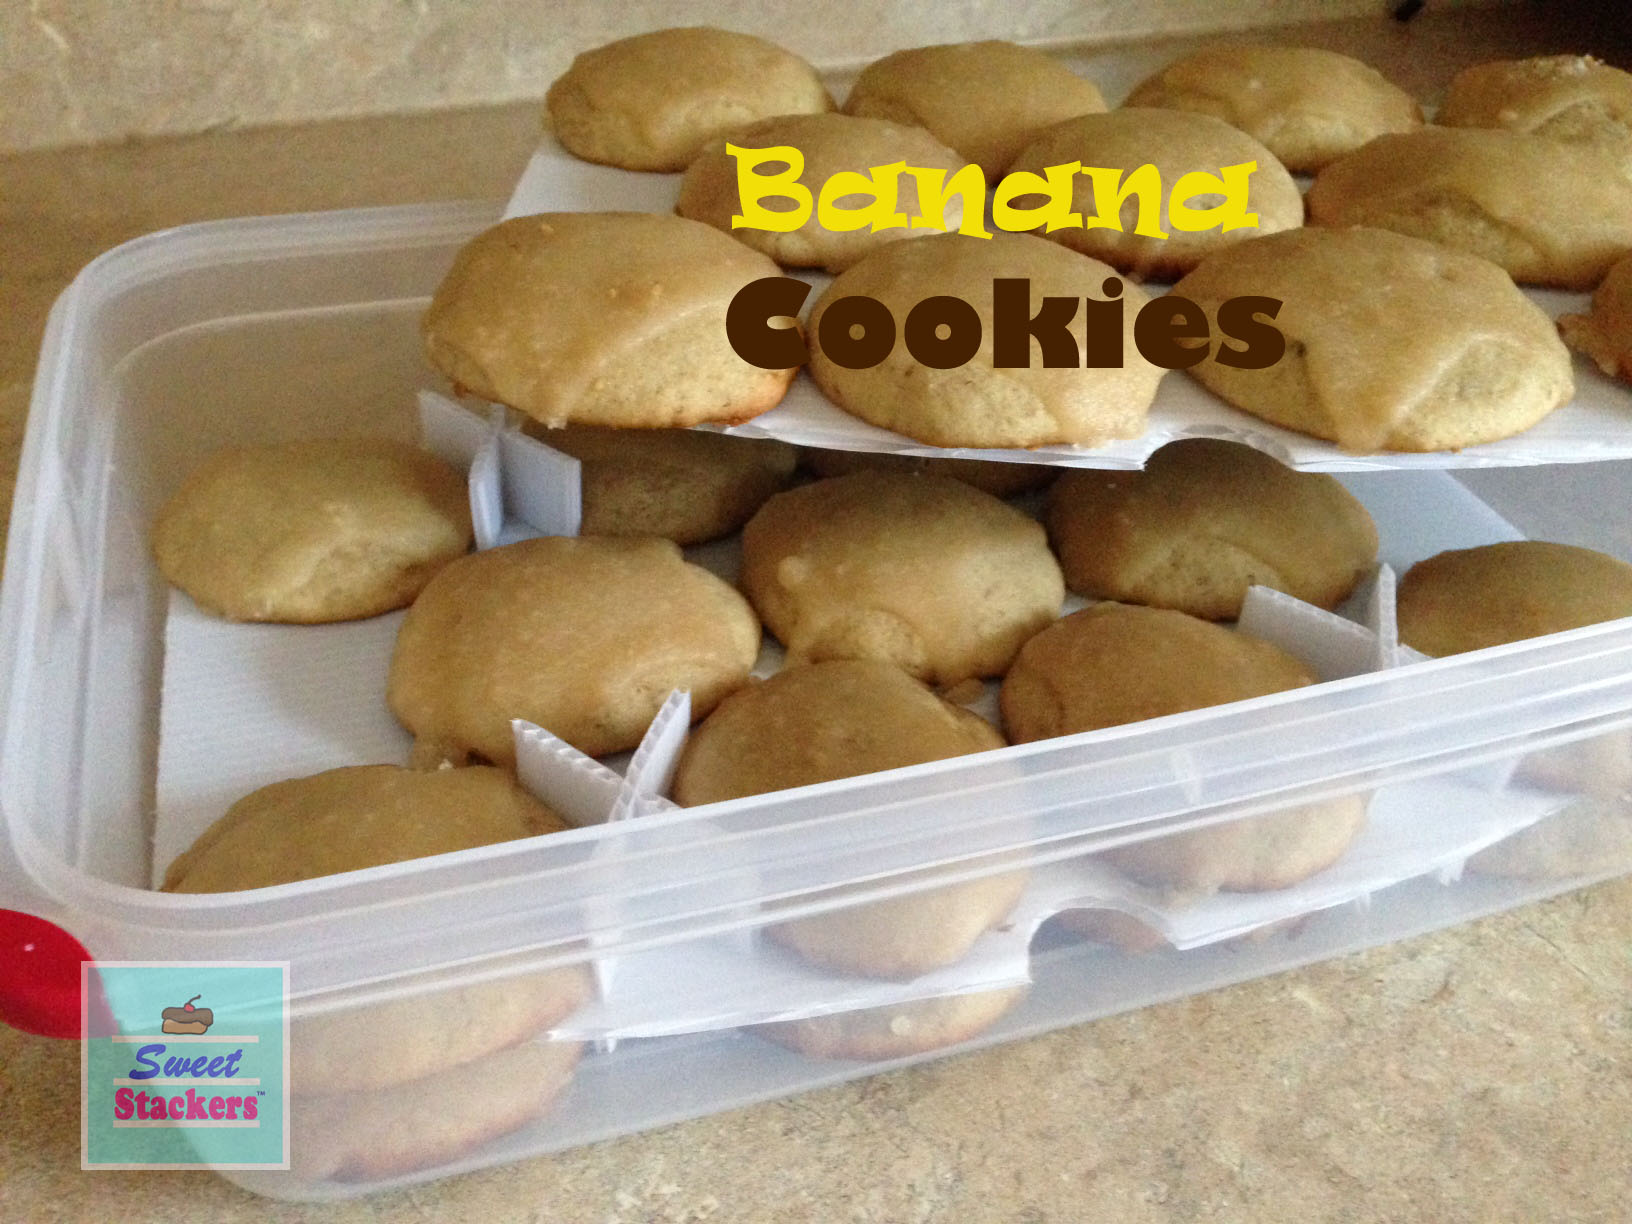 https://partykitchen.files.wordpress.com/2014/09/sweet-stackers-banana-cookies.jpg